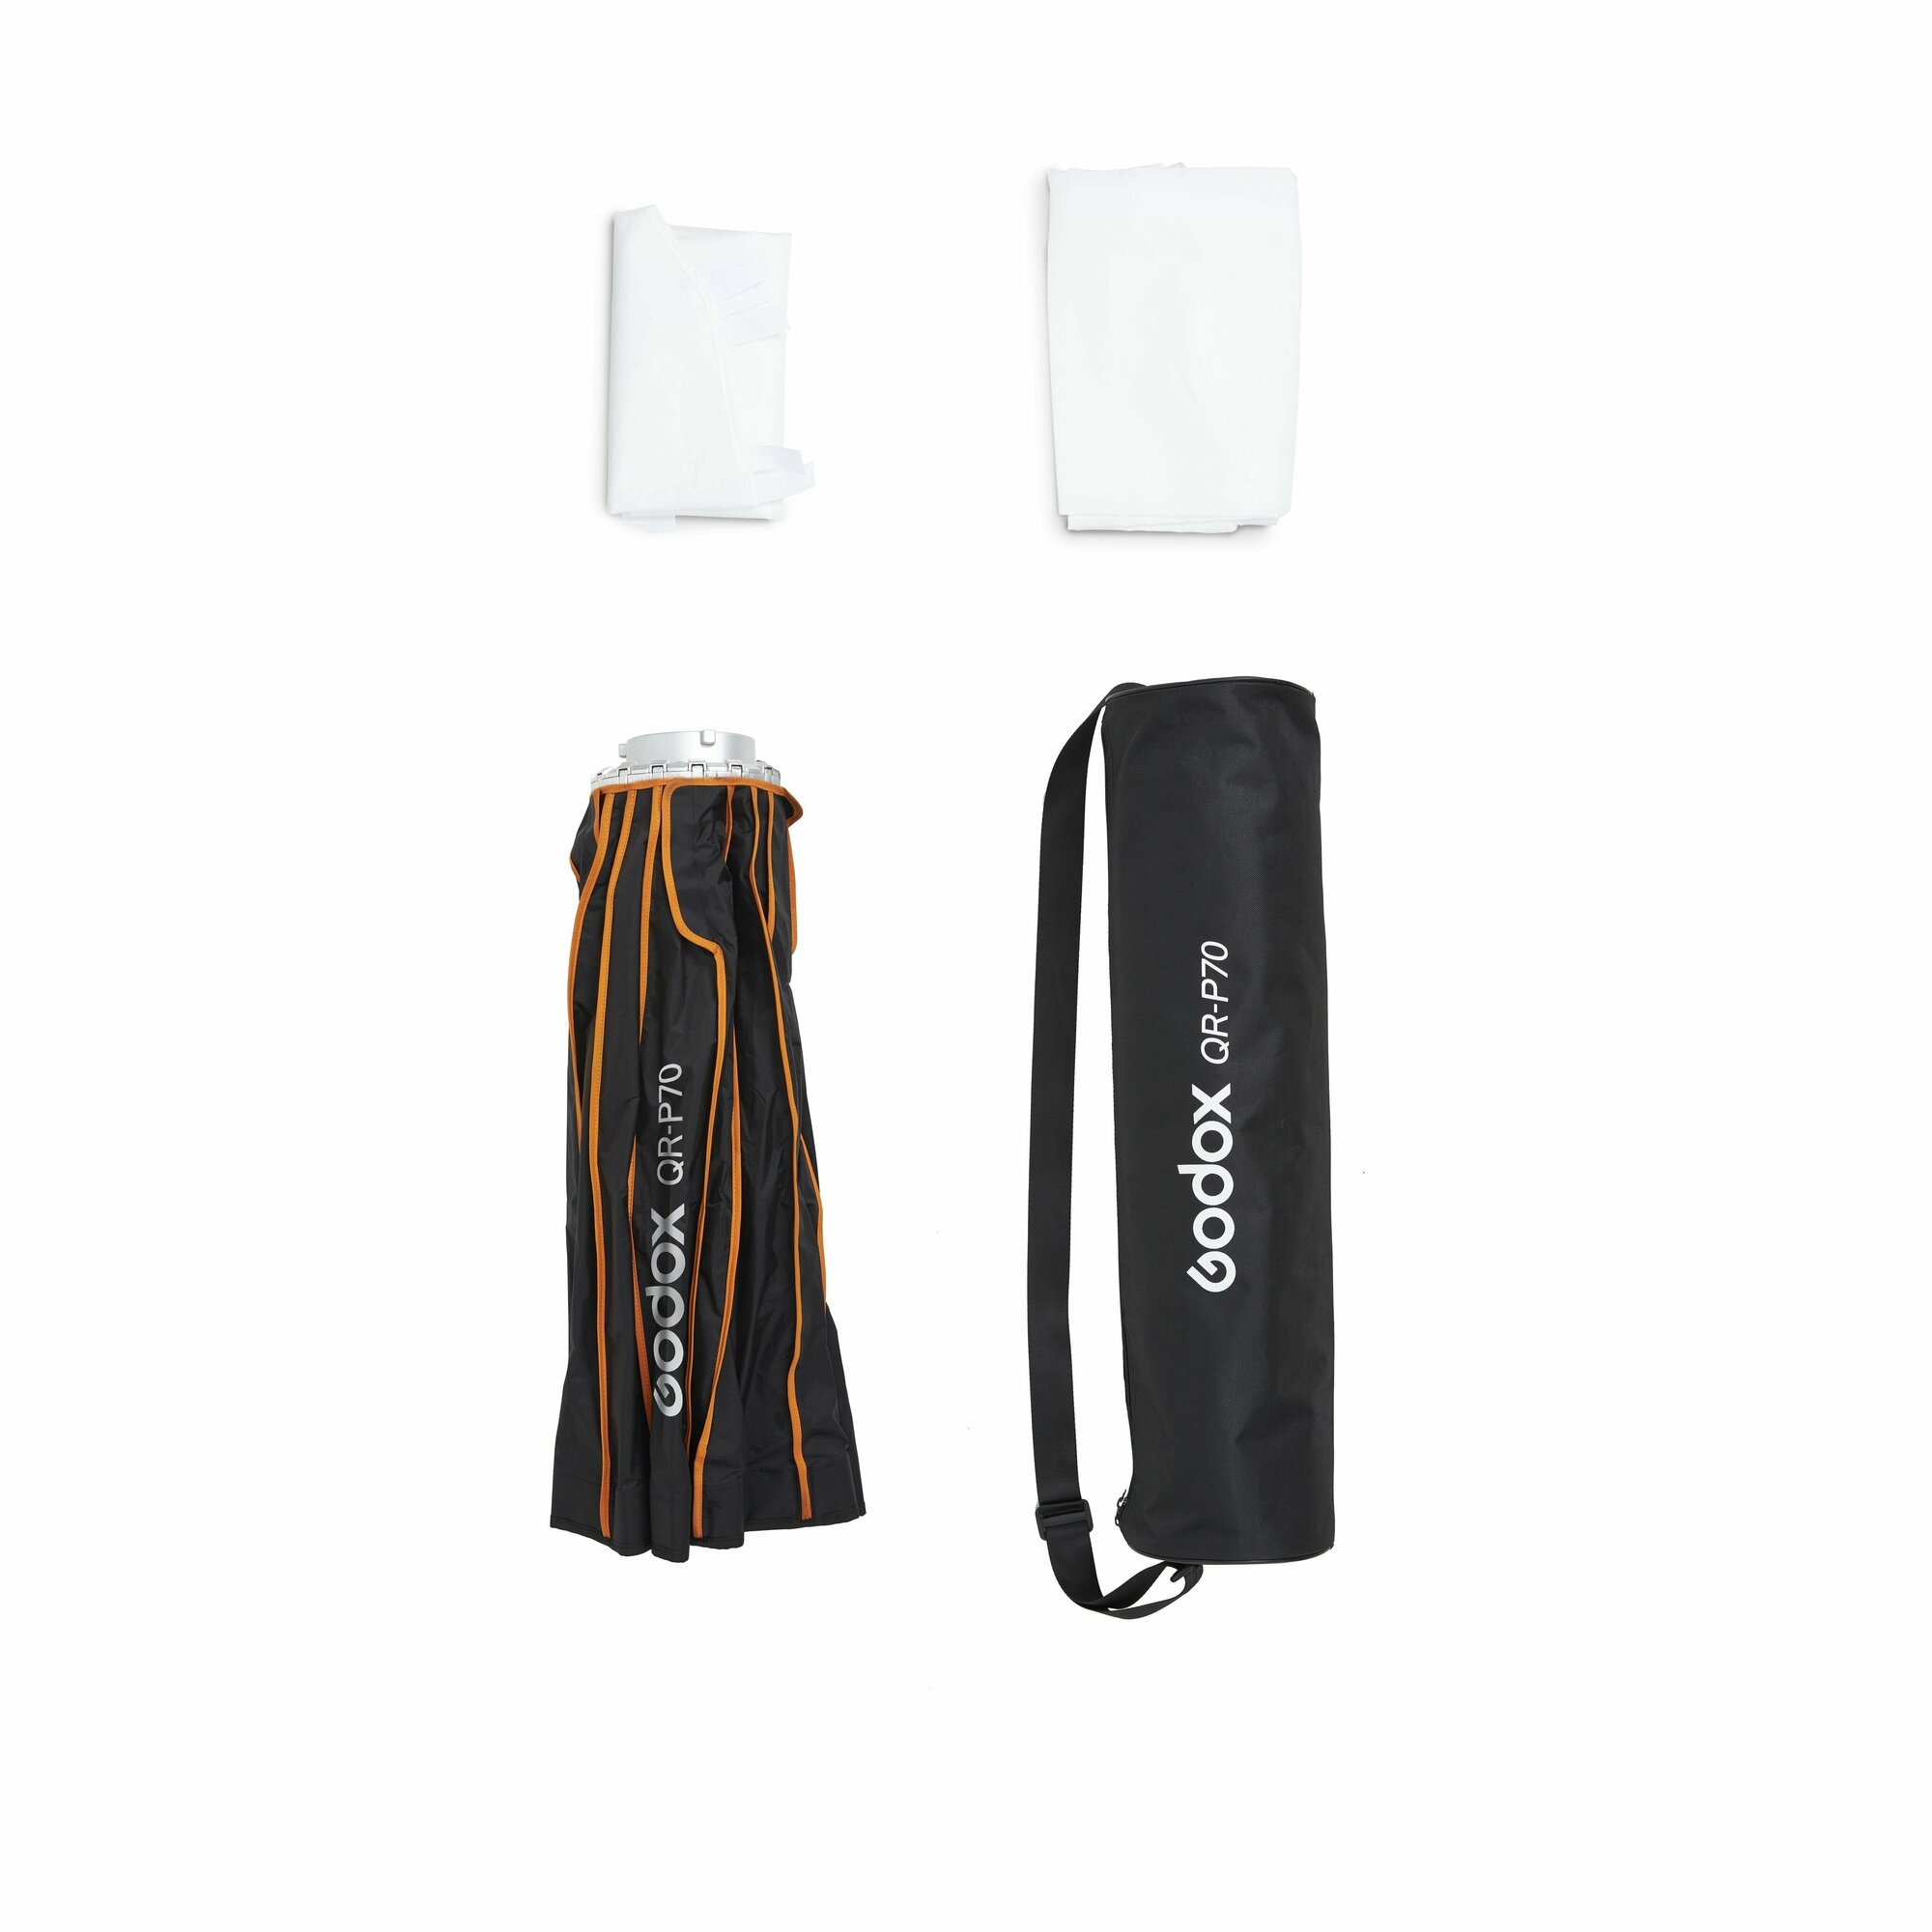 Софтбокс Godox QR-P70 параболический, 70 см, быстроскладной для вспышек и светодиодных осветителей с байонетом Bowens, студийный свет